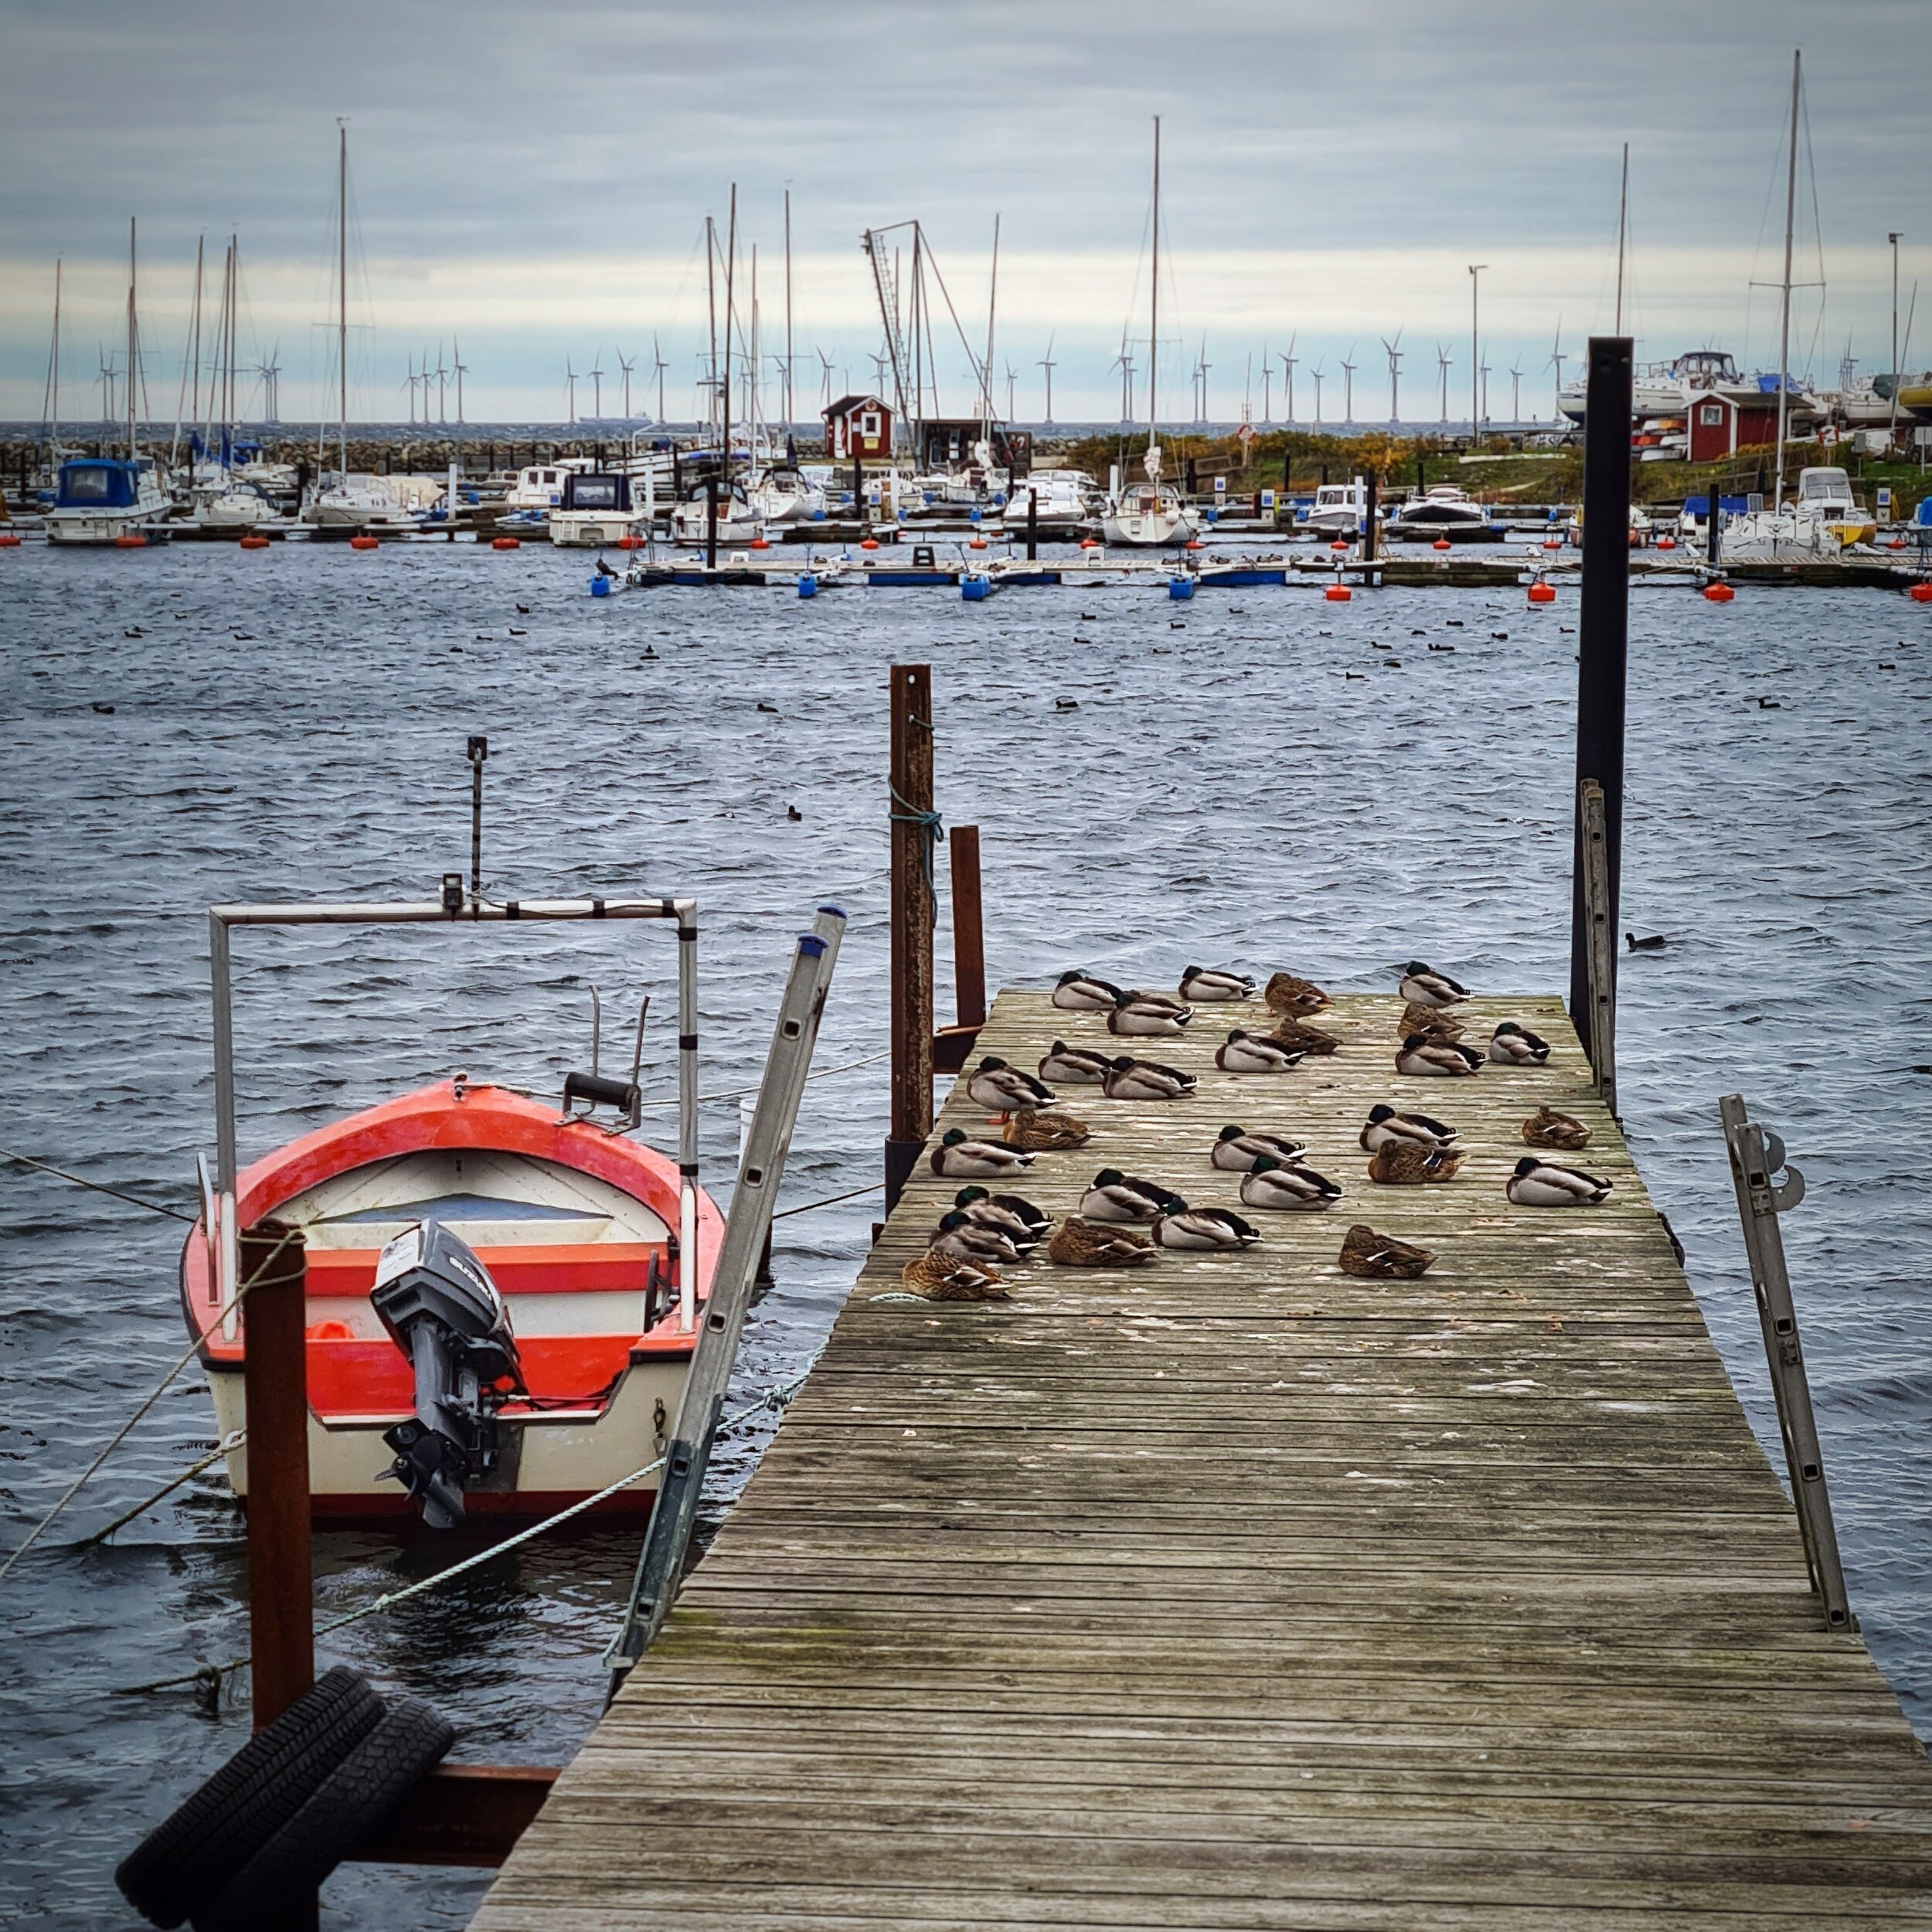 Day 299 - October 25: Duck Dock